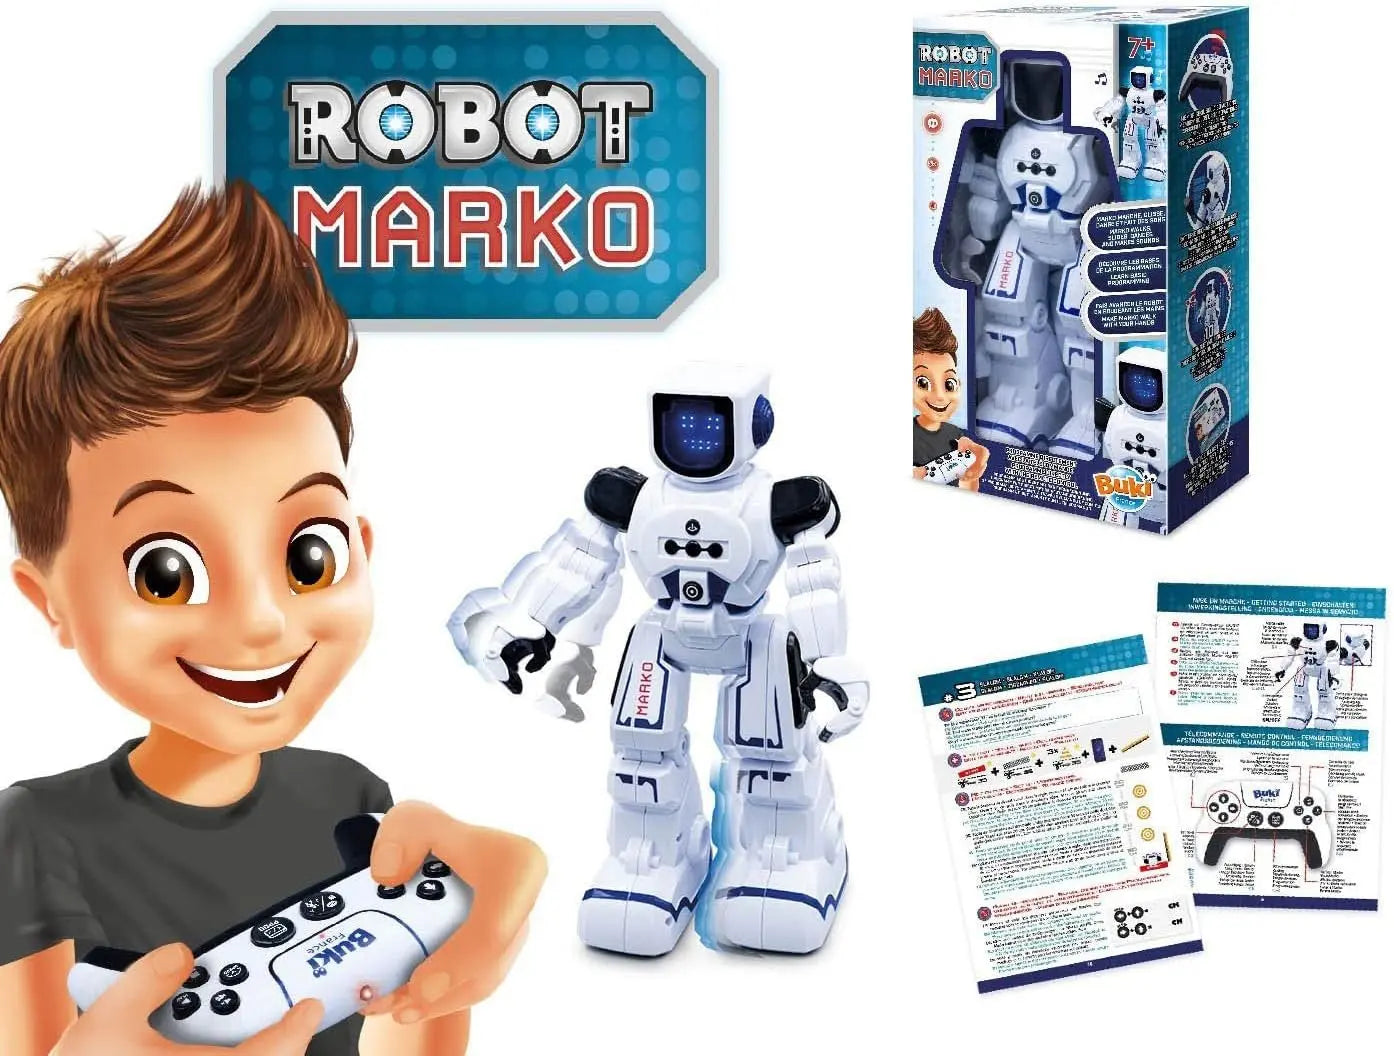 jouet pour enfant Buki Robot Marko JANOD